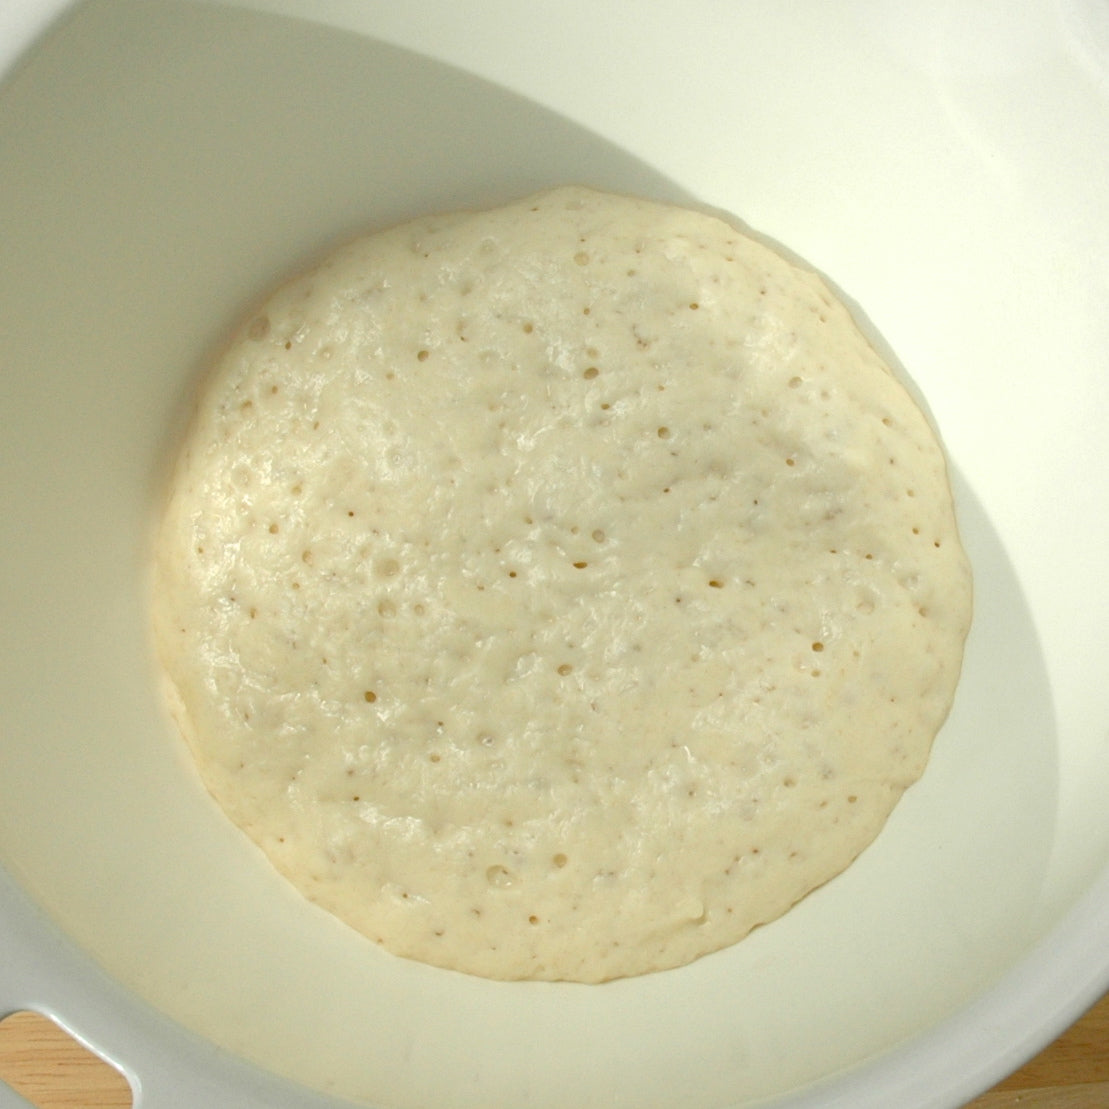 Fermented dough in a bowl